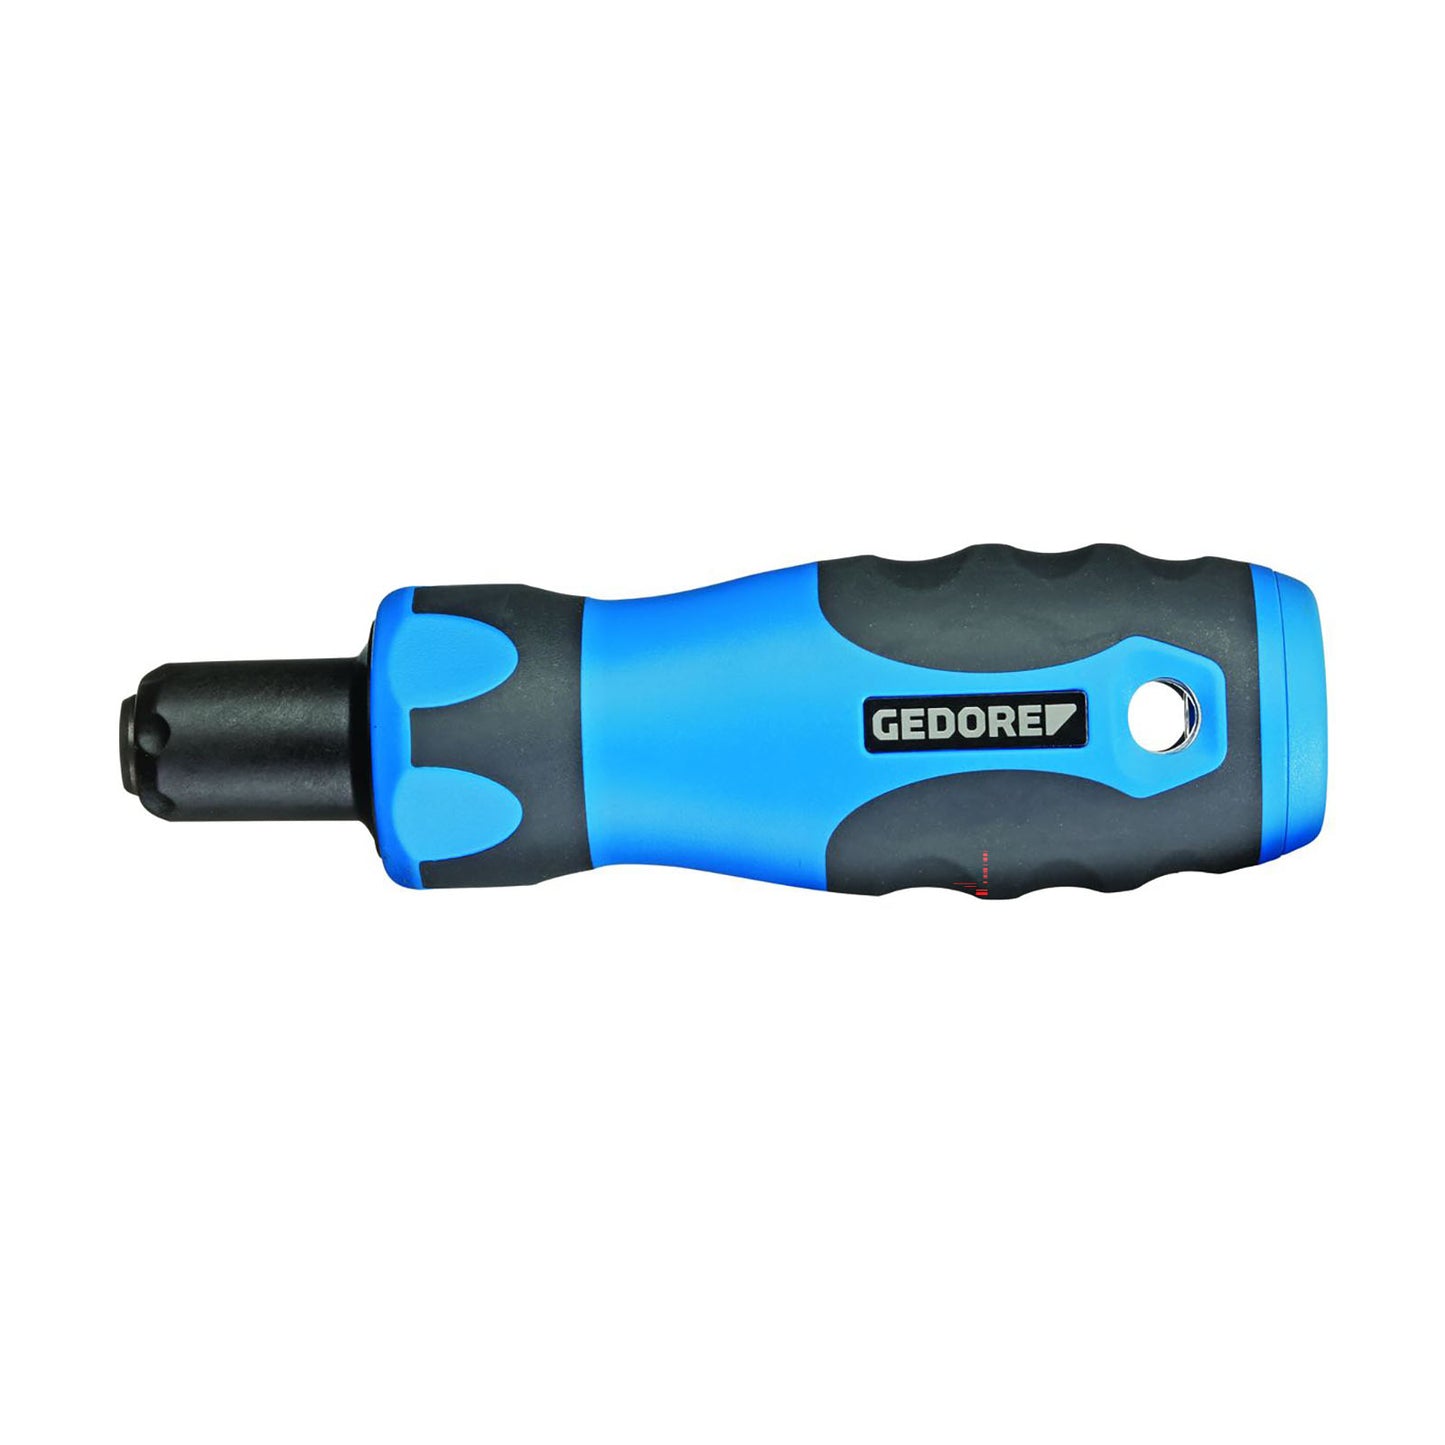 GEDORE PRO 25 FH - Clutch dynamometric screwdriver PGNP 5-25 cNm (2927756)